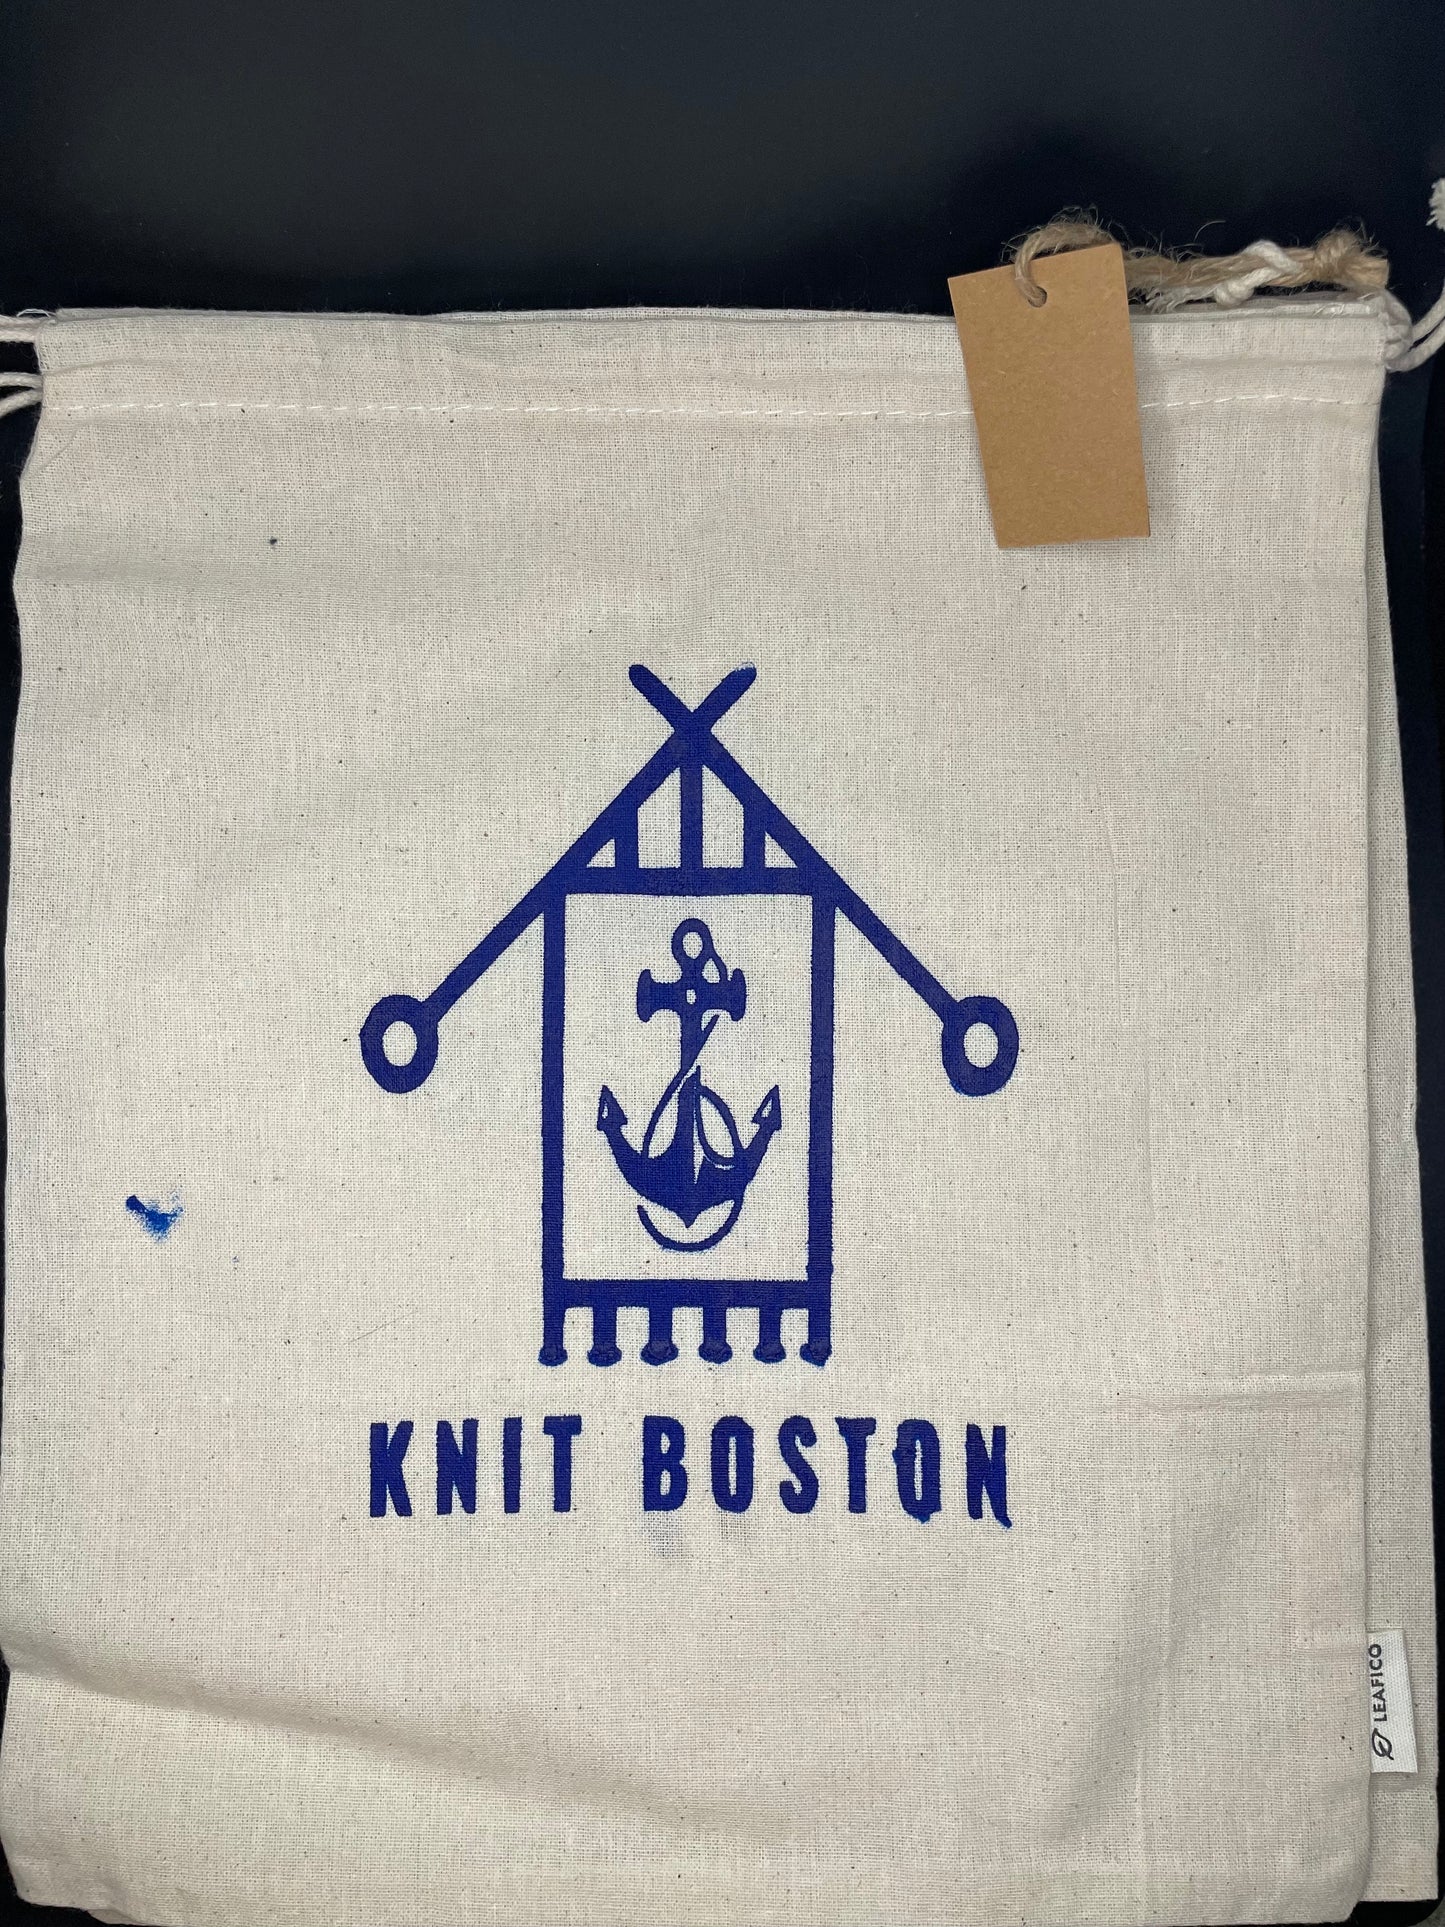 Screen printed "knit boston" drawstring pouch